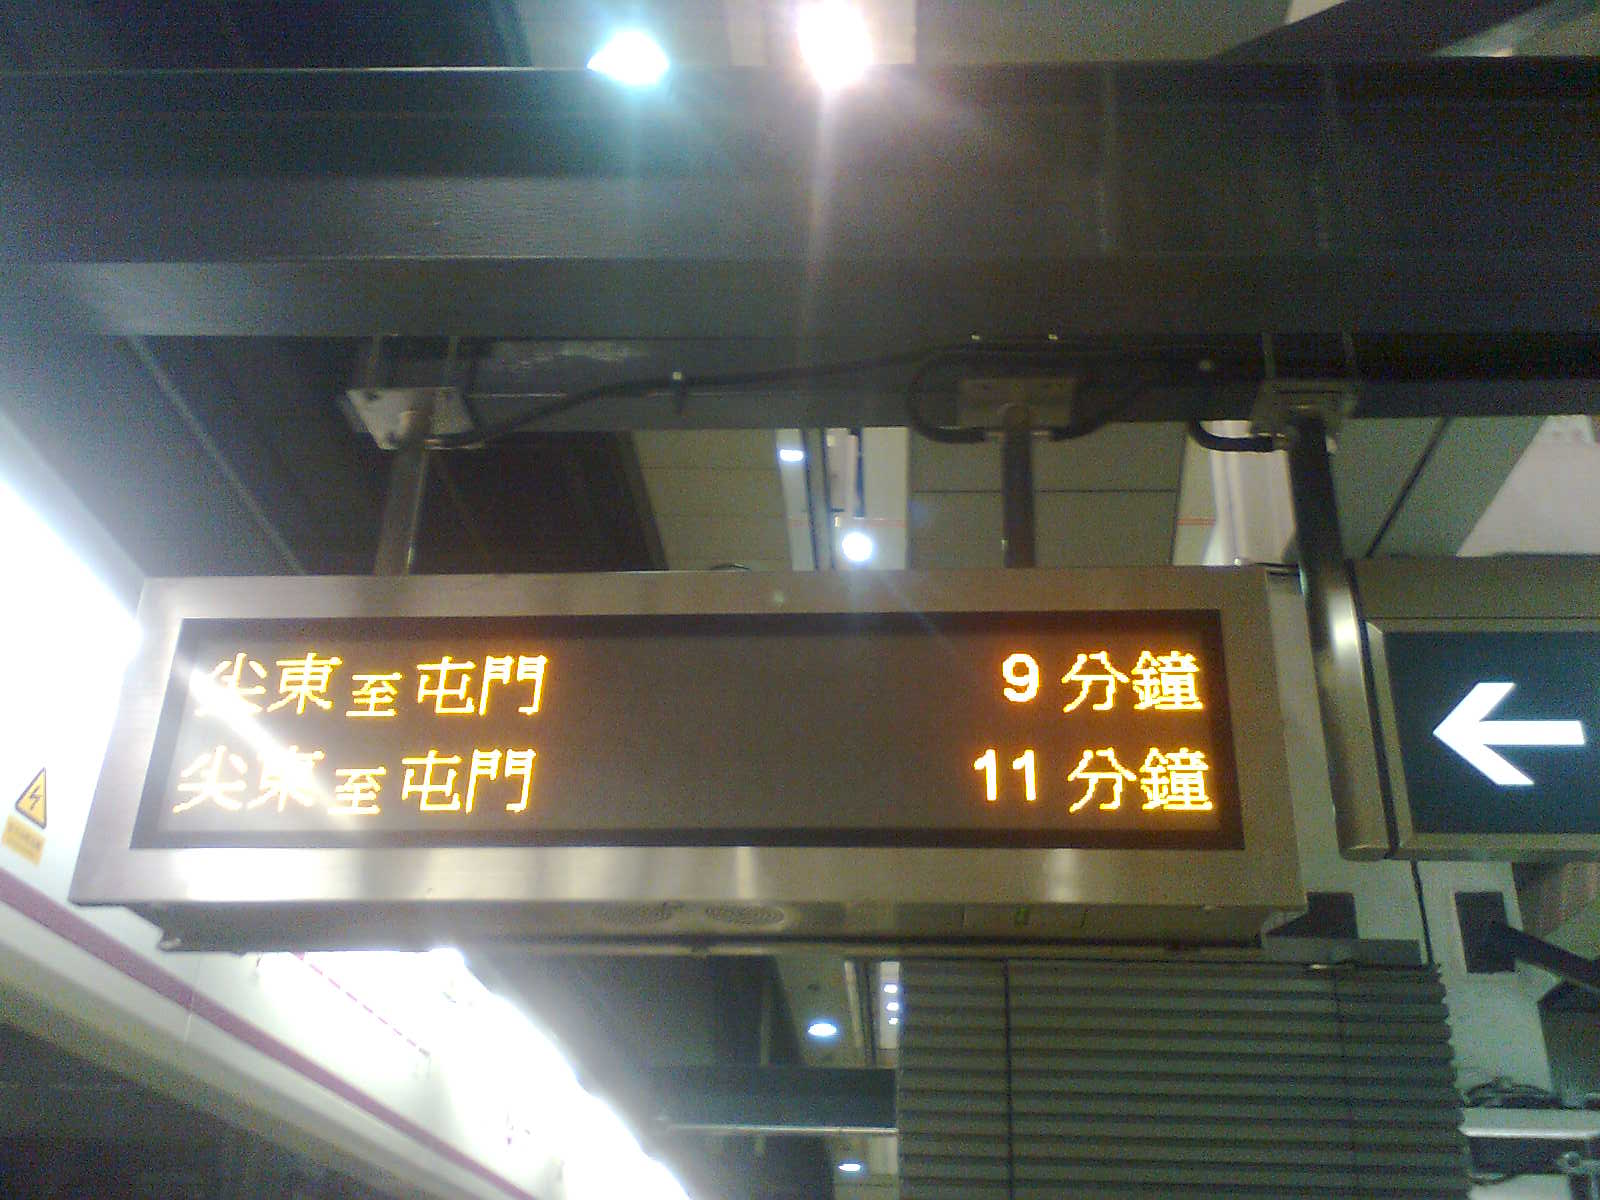 紅墈站西鐵線2號月台(貳).jpg